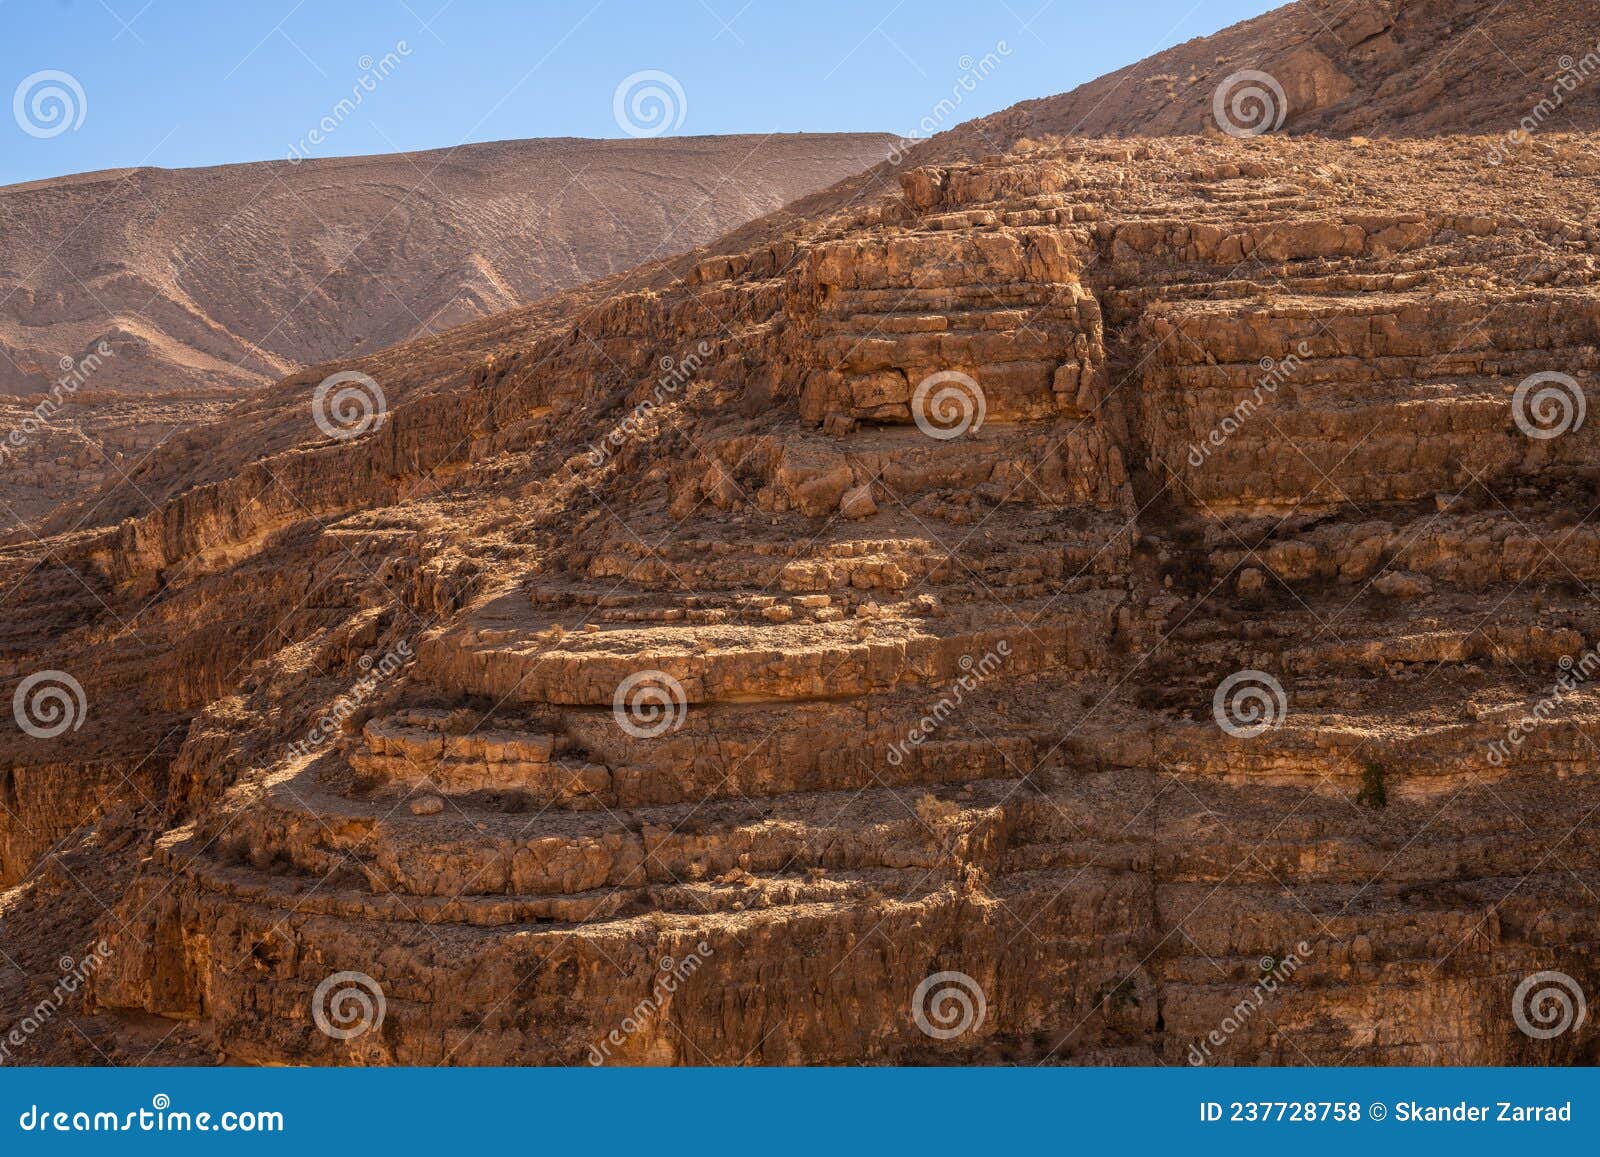 mides-  mountain oasis and canyon  - tunisia